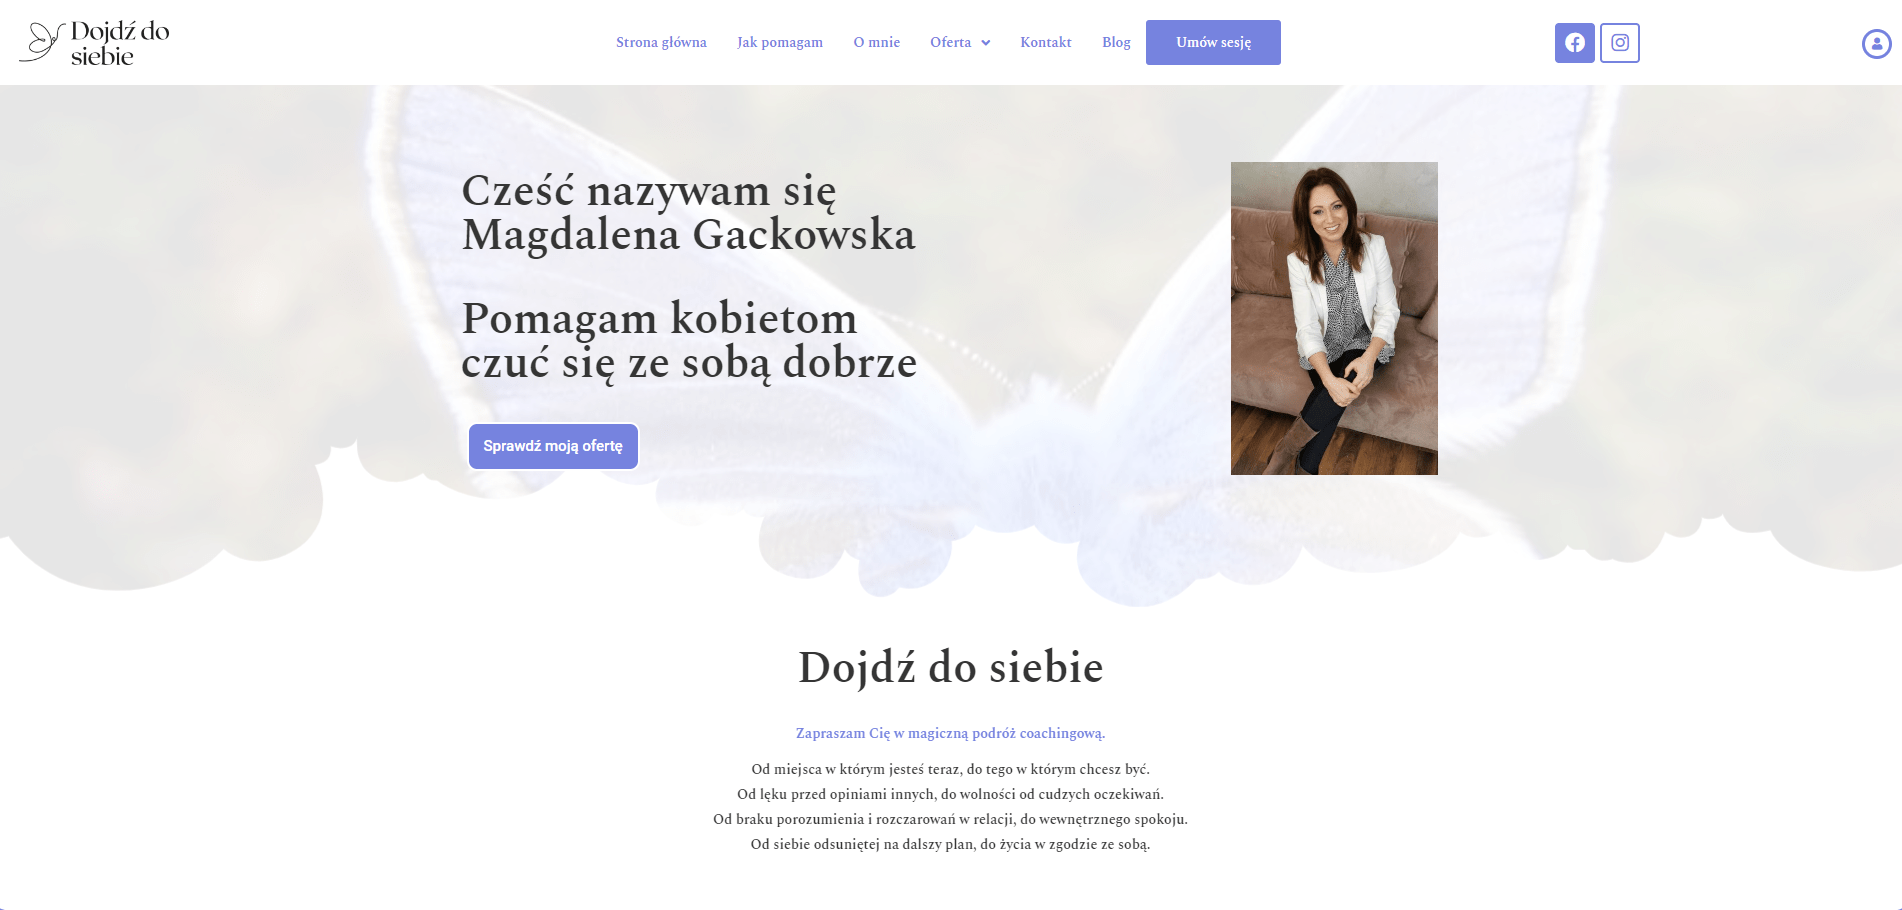 www.dojdzdosiebie.pl